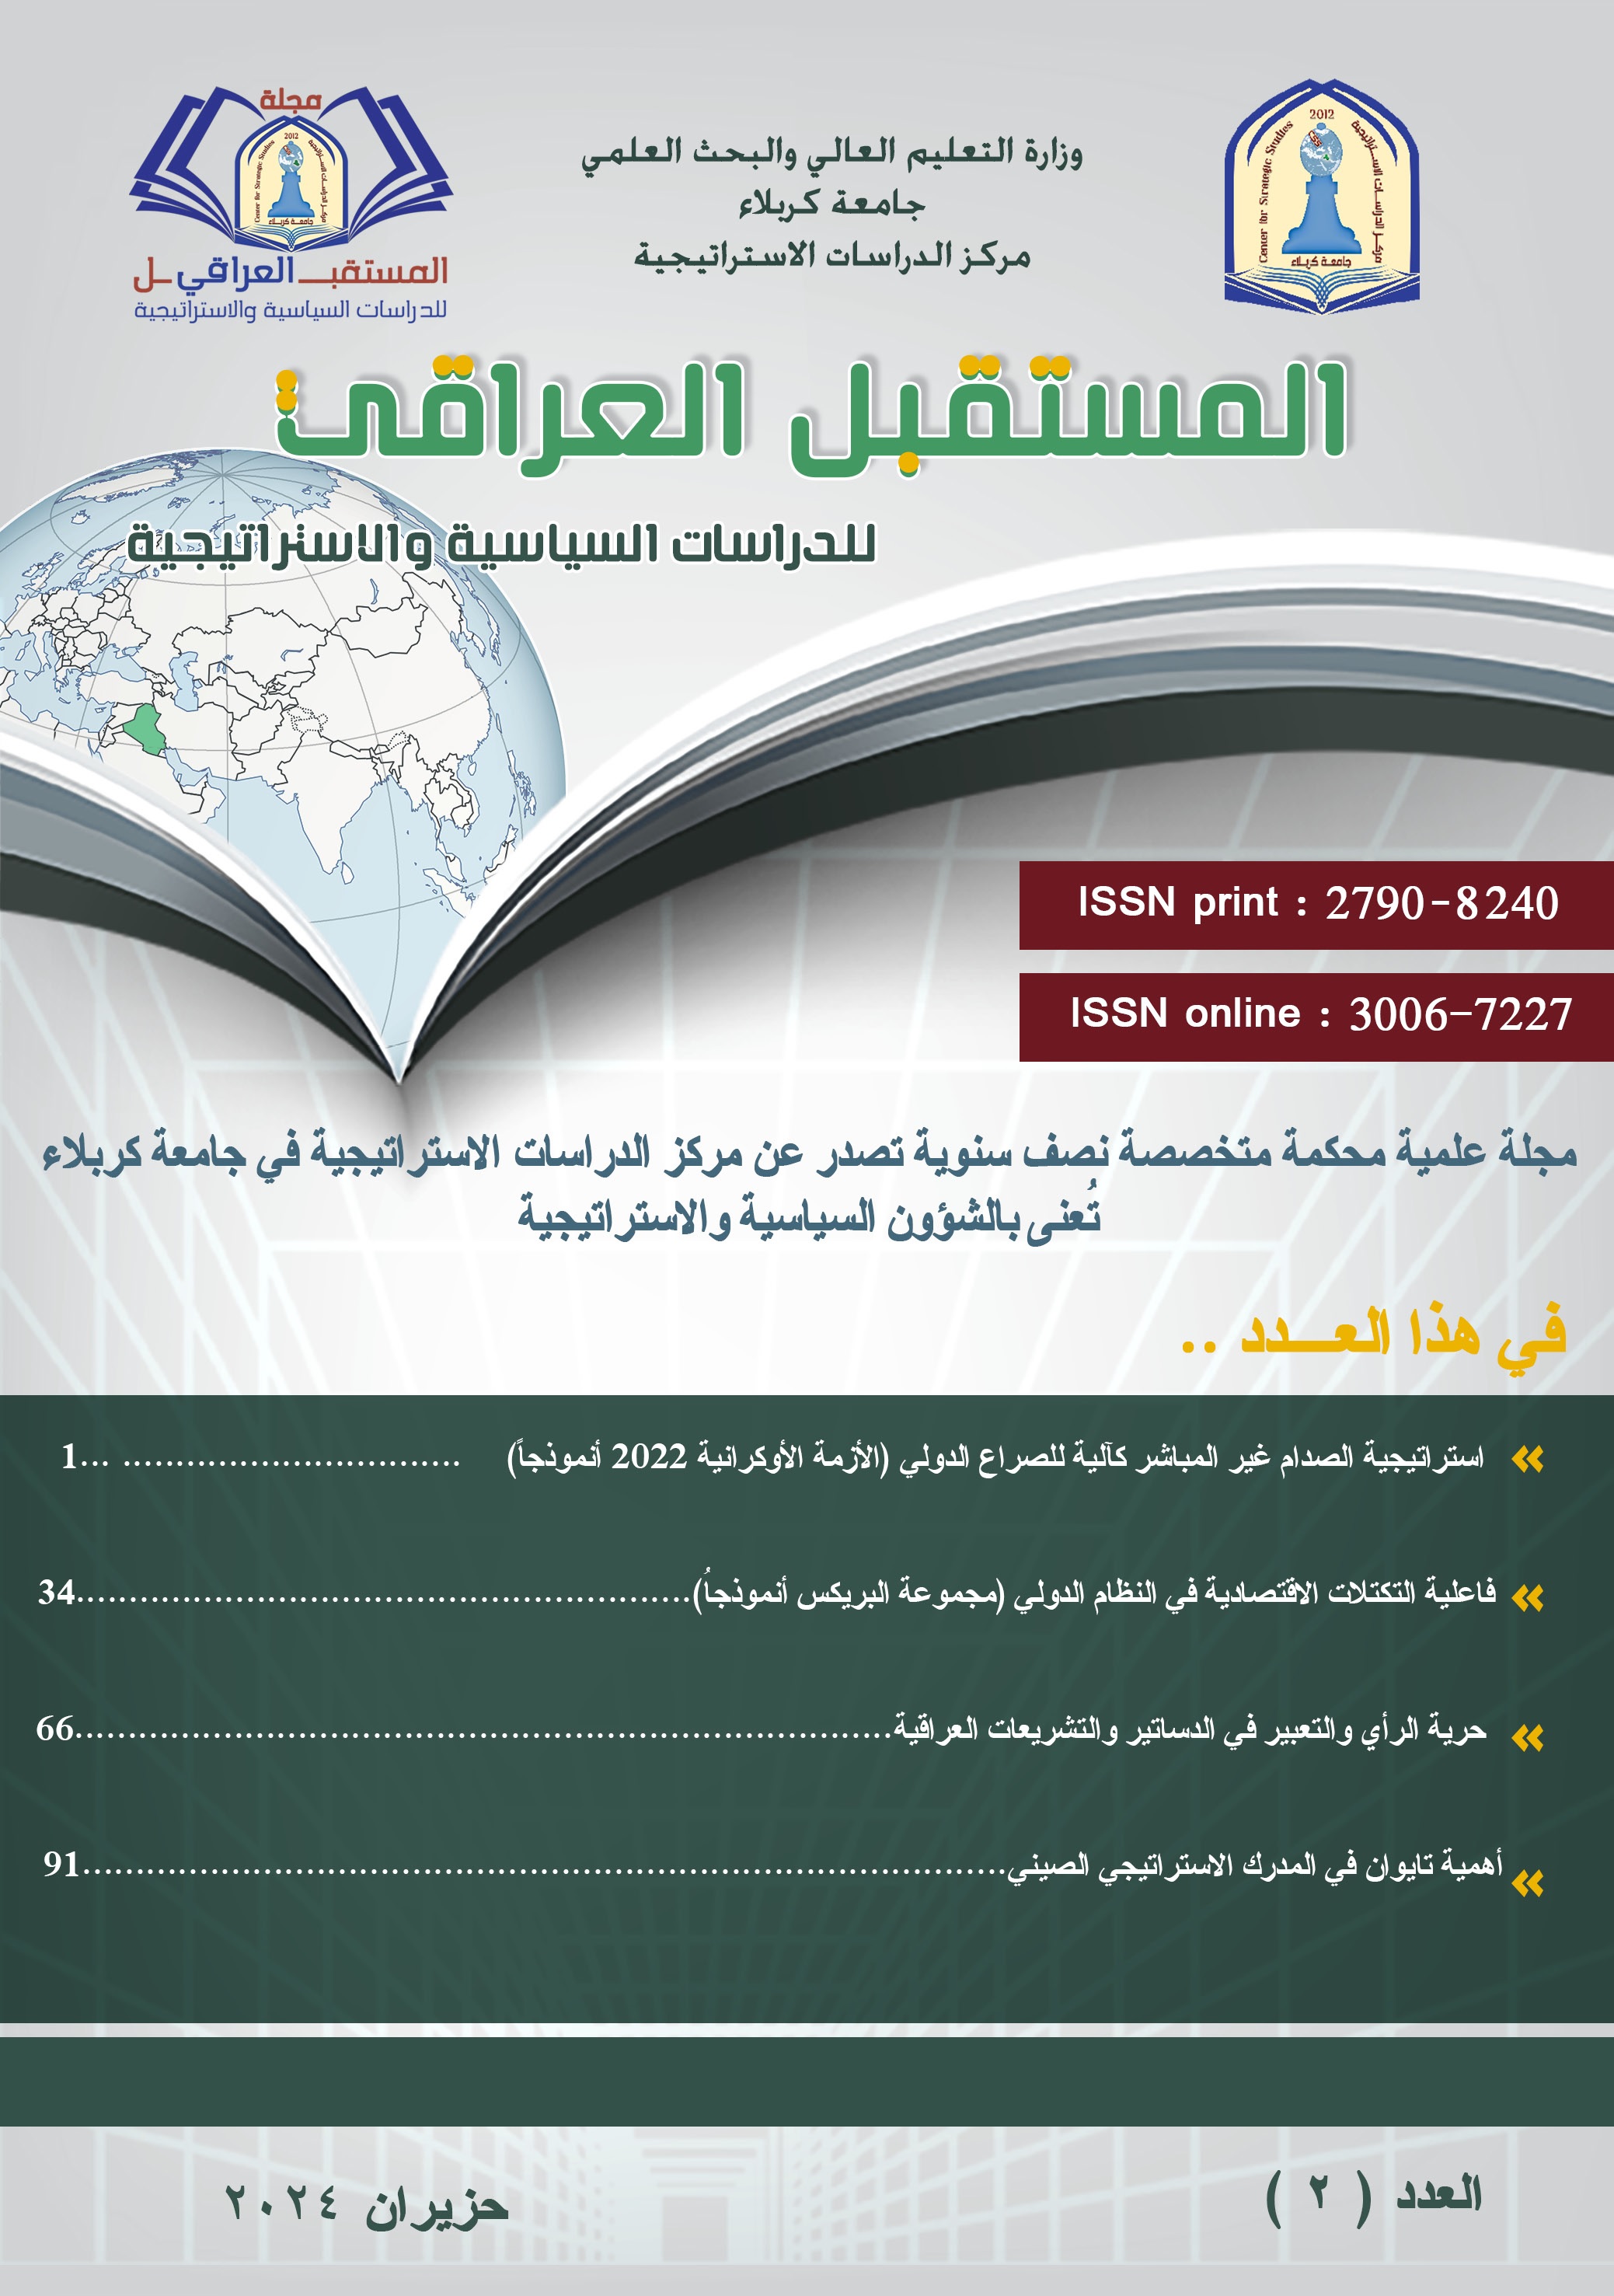 					معاينة مجلد 1 عدد 2 (2024): العدد 2 من مجلة المستقبل العراقي للدراسات السياسية والاستراتيجية
				